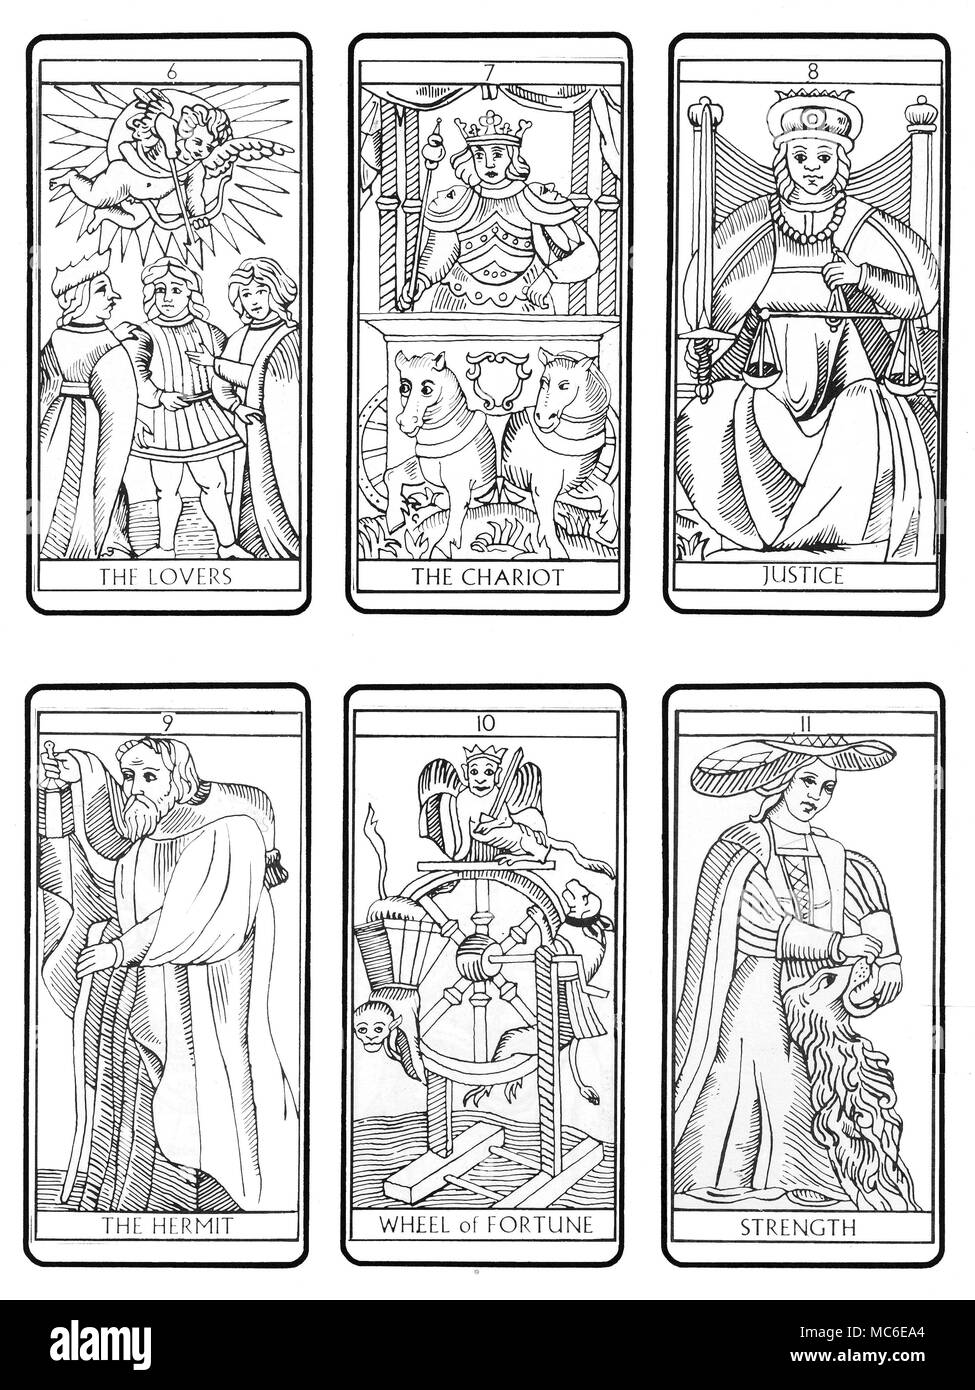 Tarocchi - Mazzo di Marsiglia Il secondo sei della sequenza di 22 carte dei  Tarocchi (secondo il tradizionale design di Marsiglia), dalla sesta carta  (gli amanti), attraverso il carro, la giustizia, l'Eremita,